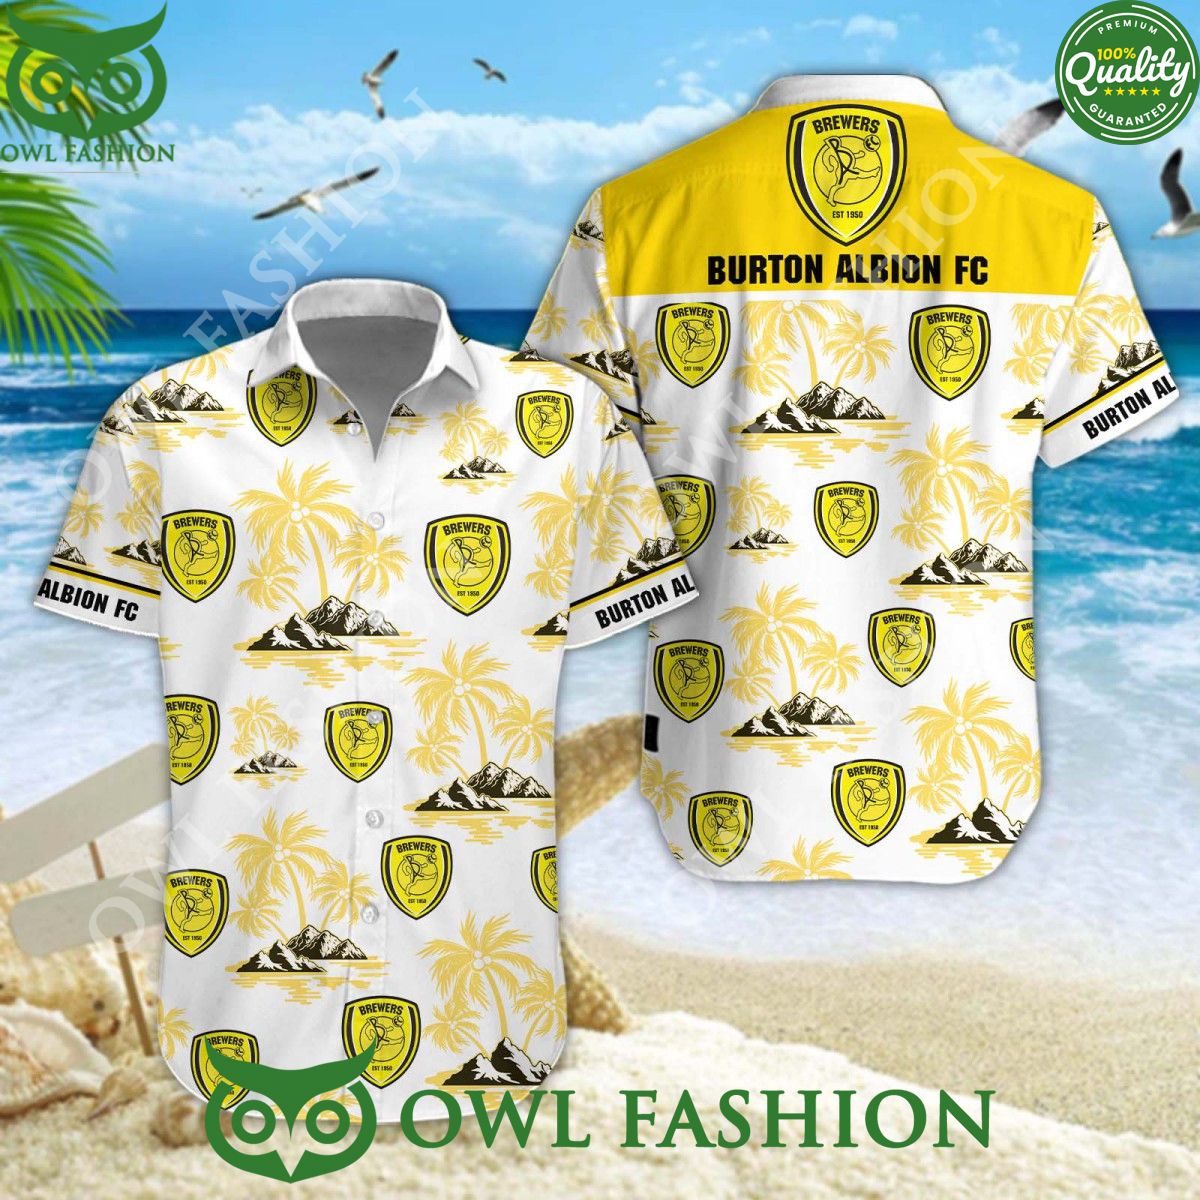 burton albion football club island hawaiian shirt 1 9ZhJk.jpg